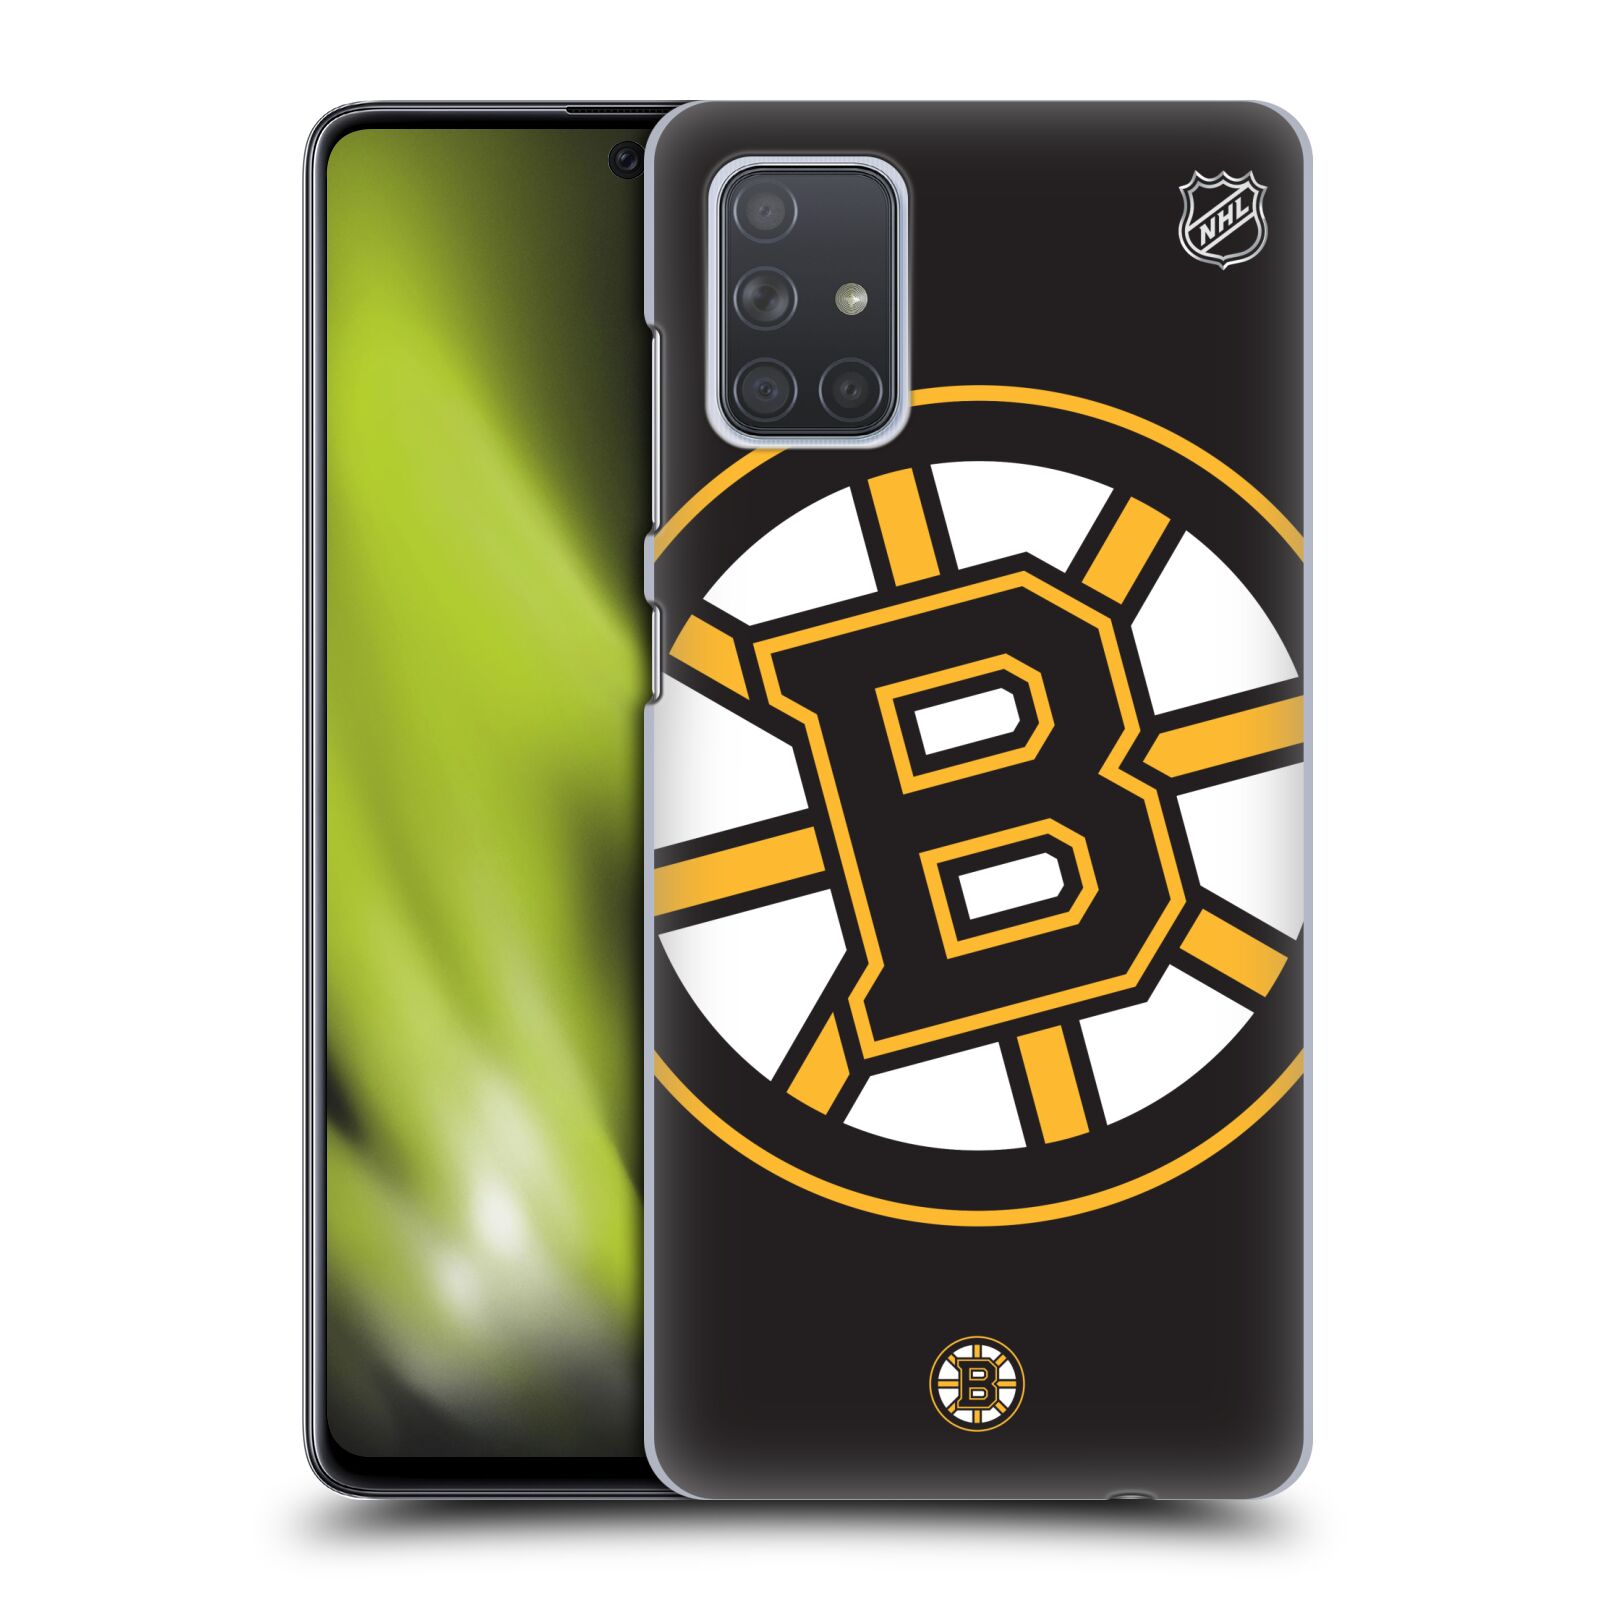 Pouzdro na mobil Samsung Galaxy A71 - HEAD CASE - Hokej NHL - Boston Bruins - velký znak